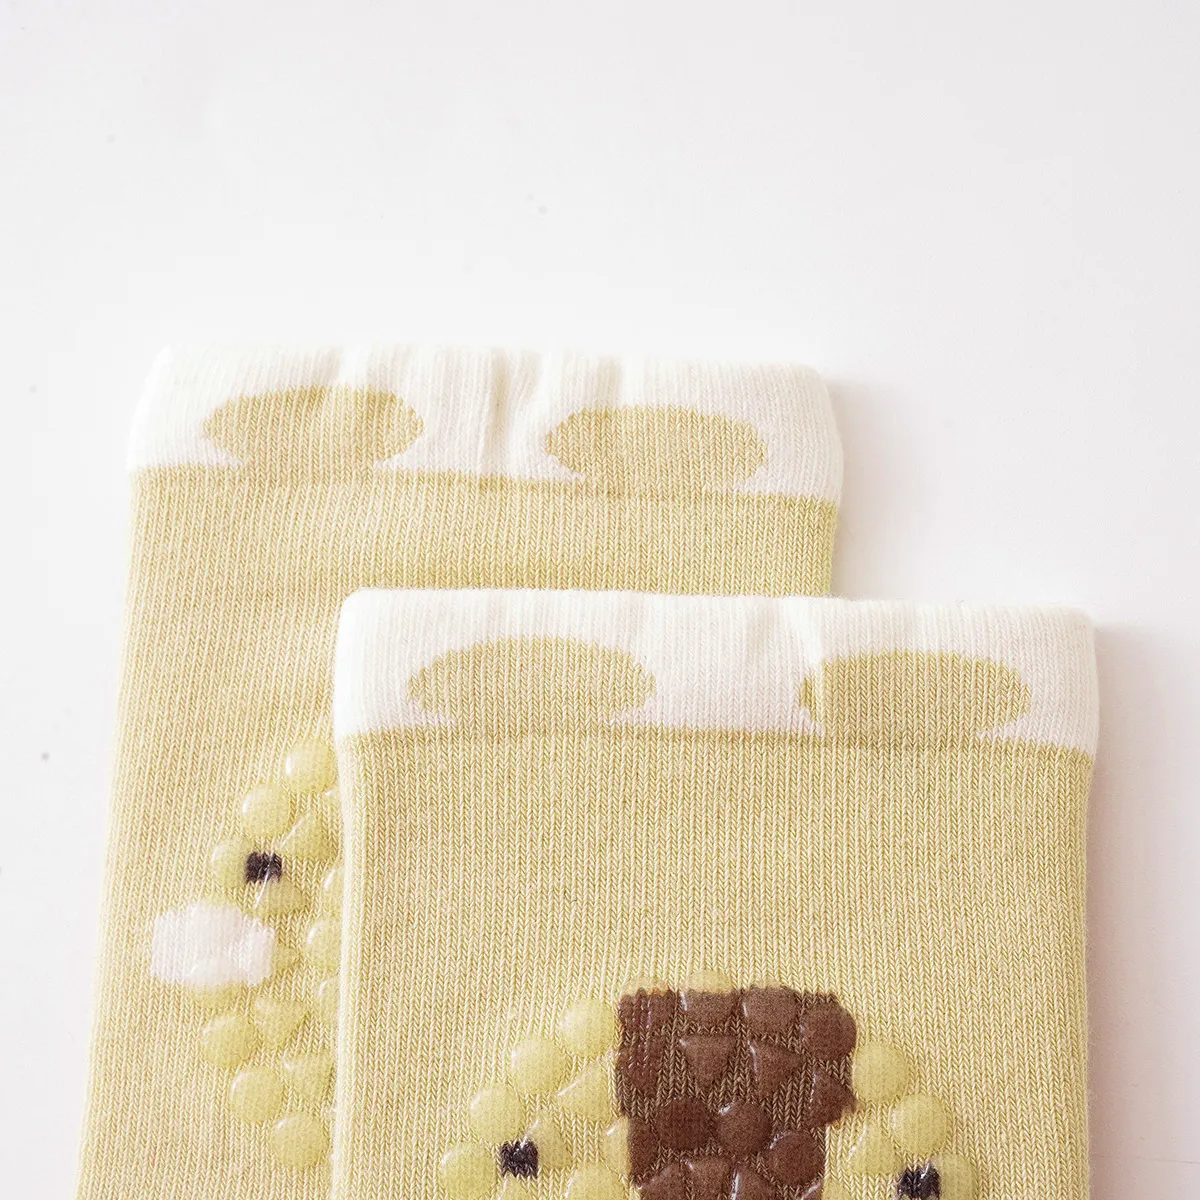 Anti-Rutsch-Knieschoner aus gekämmter Baumwolle für Kinder mit Tiermustern und Klebepunkten gelb big image 1